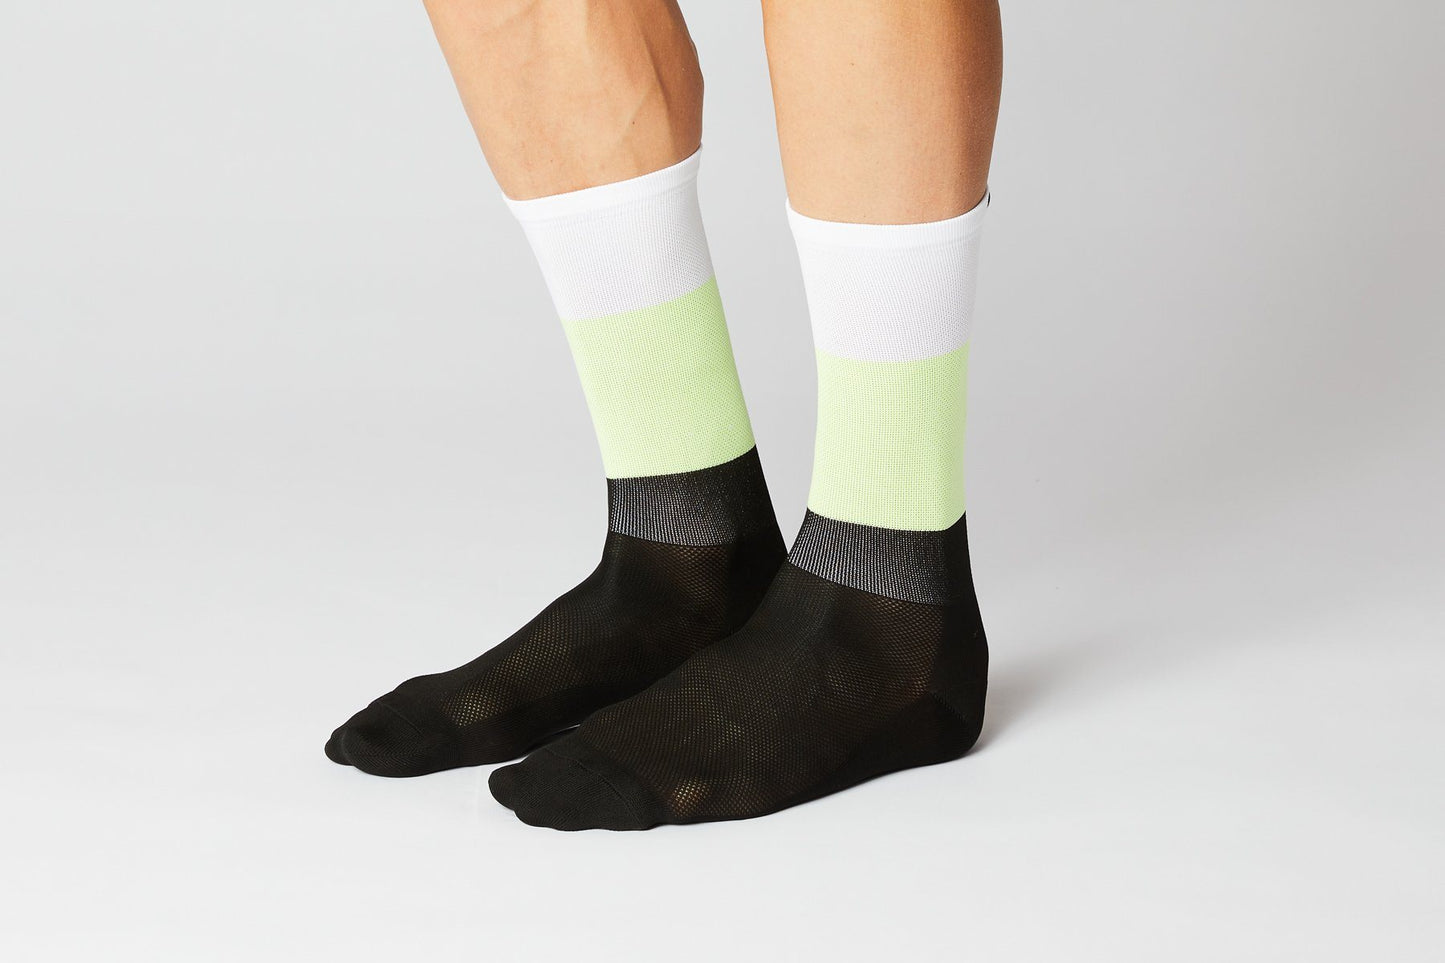 Socks BLOCKS White/Neon/Black Socks Fingerscrossed 